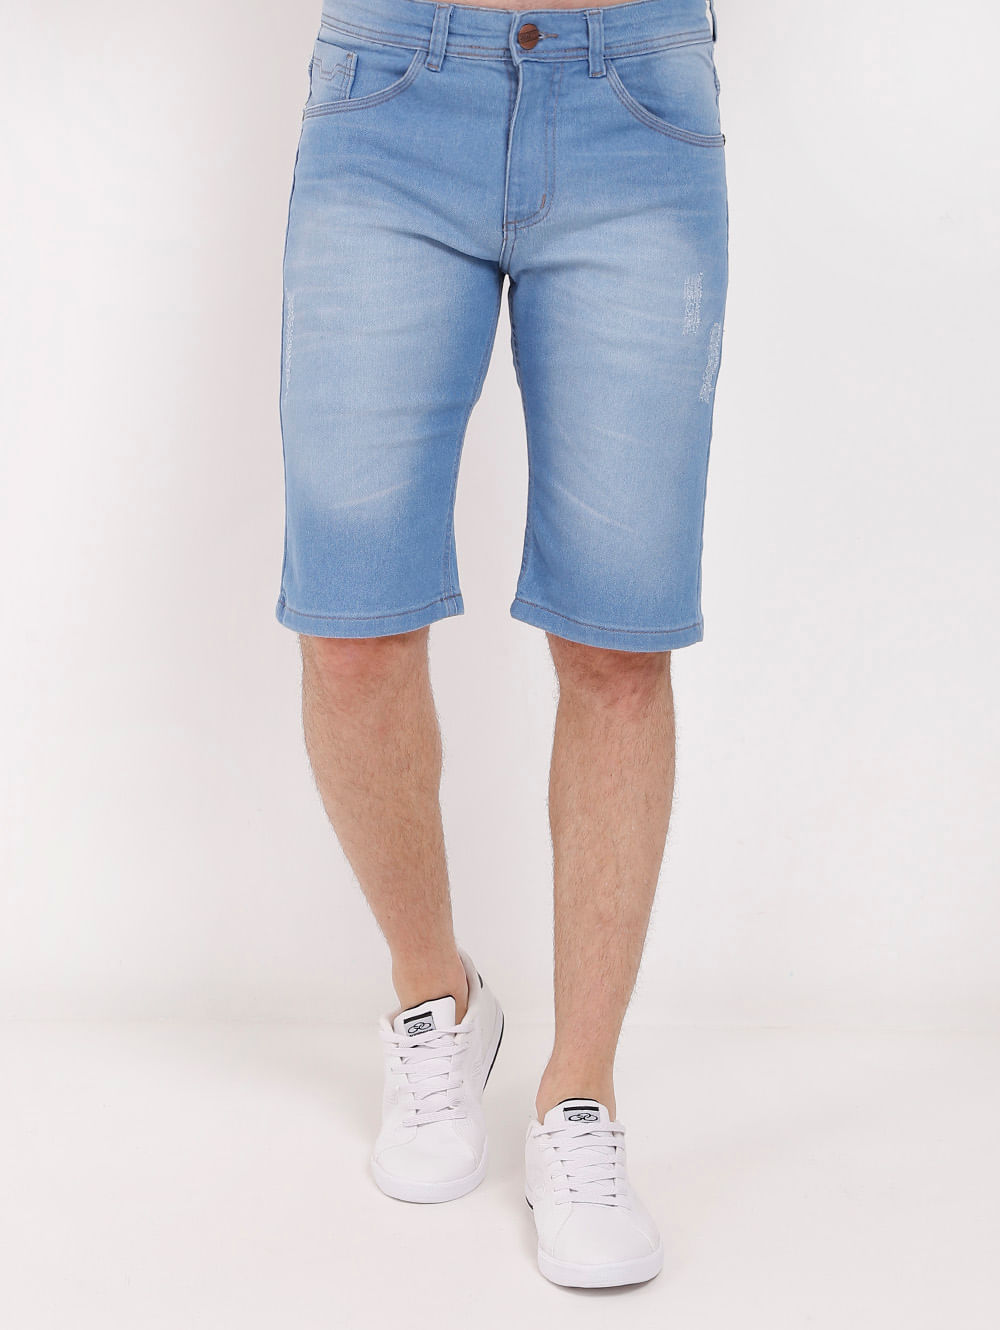 shorts jeans masculino claro